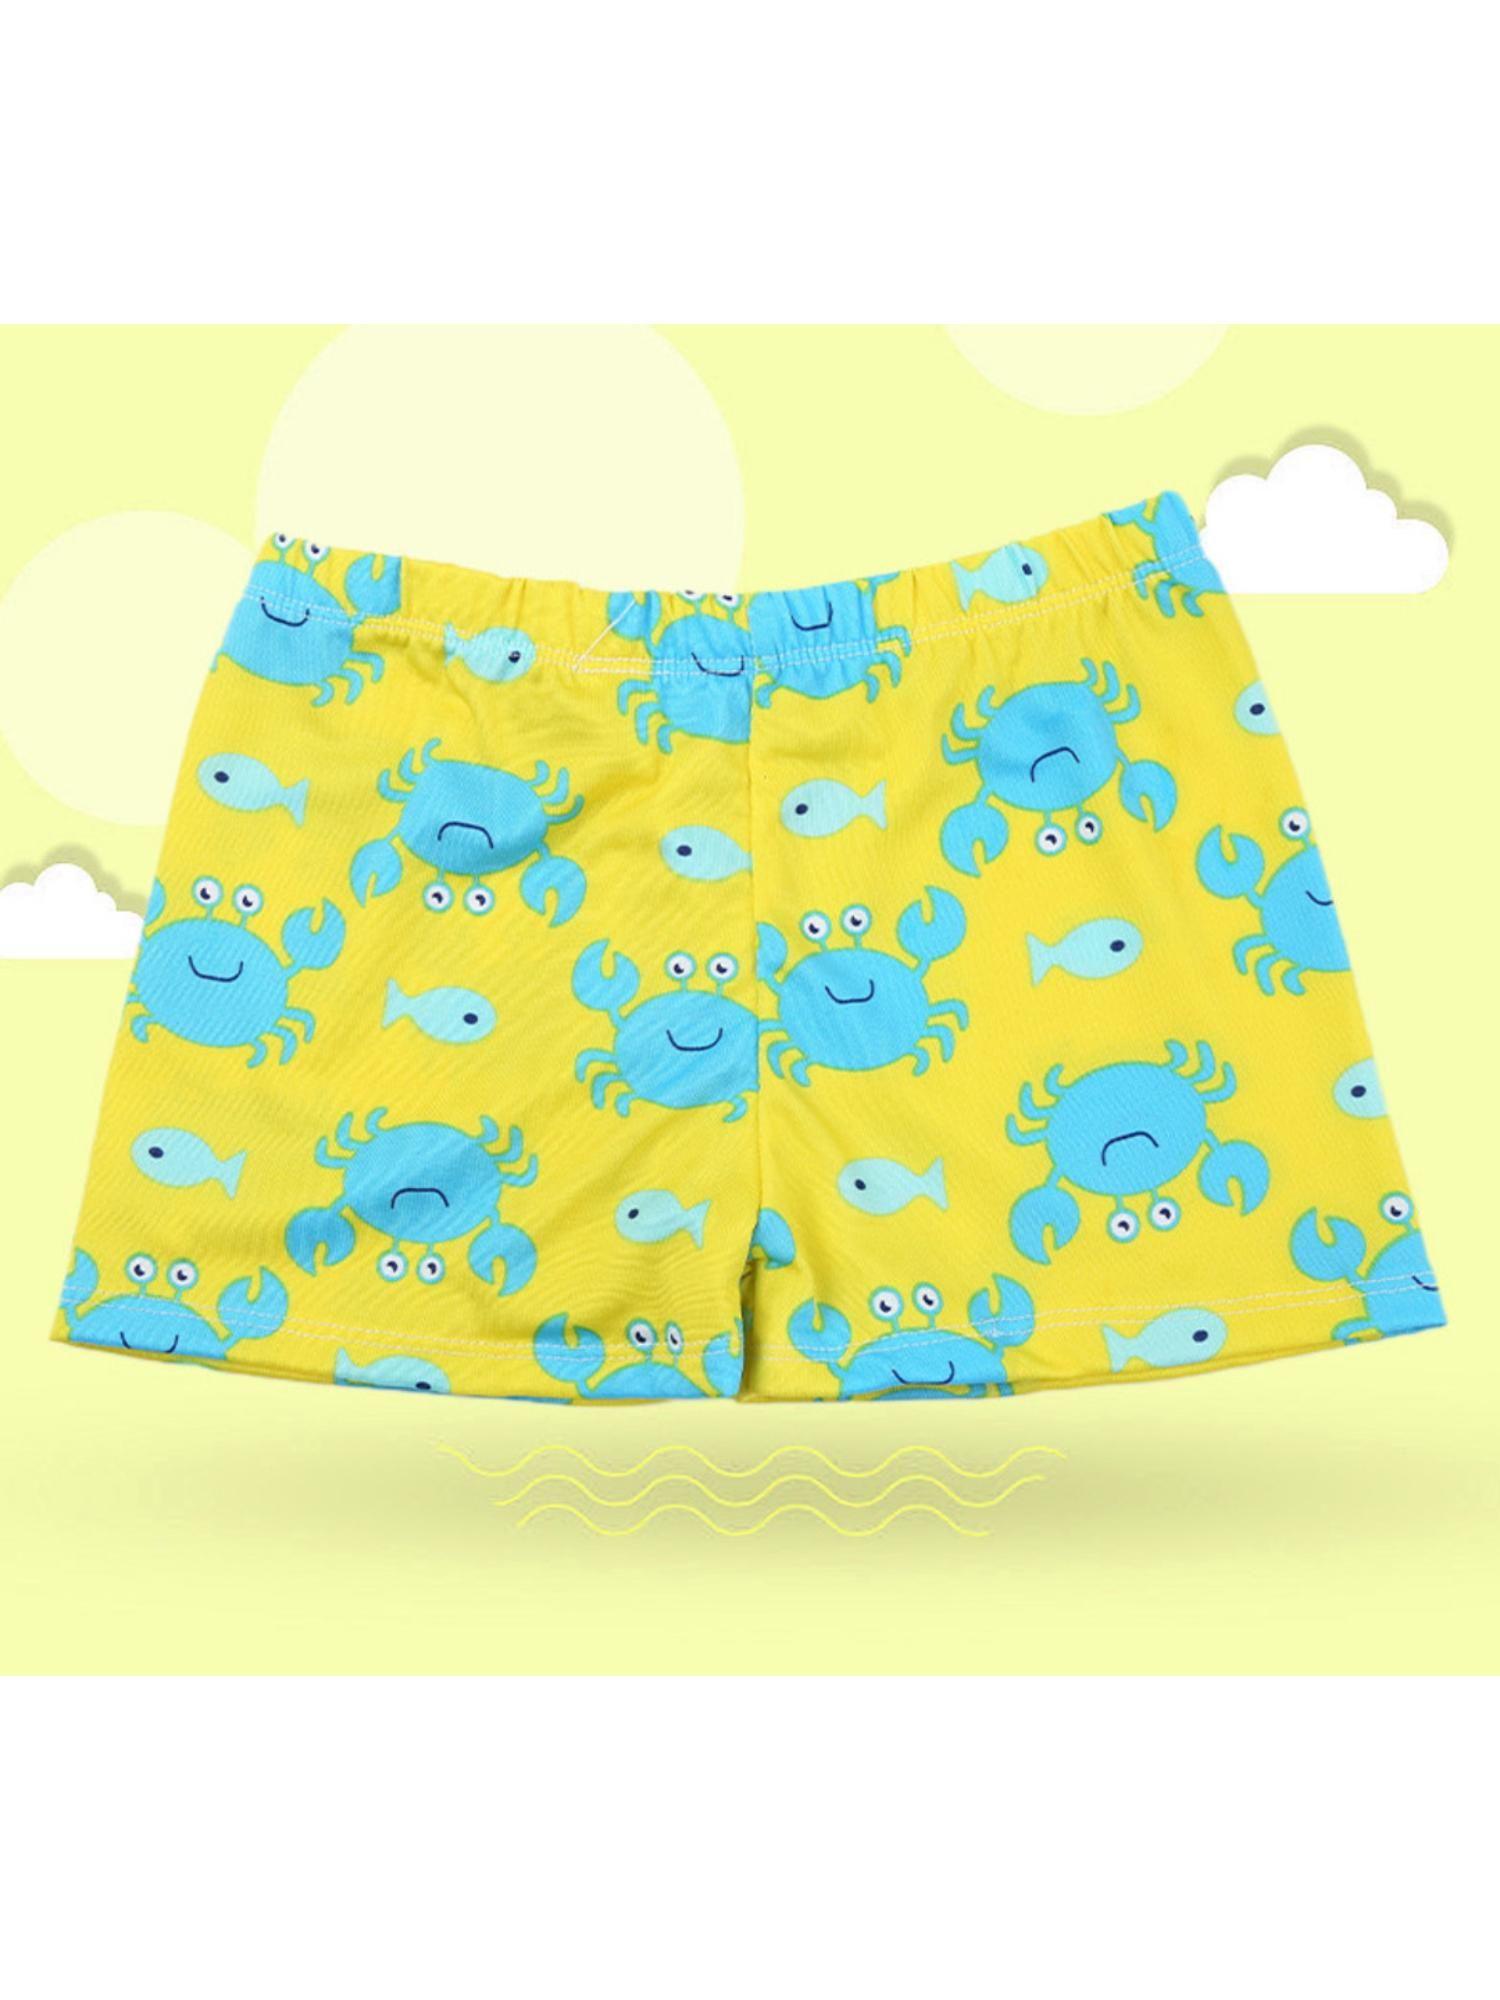 swimming costume yellow crab print shorts